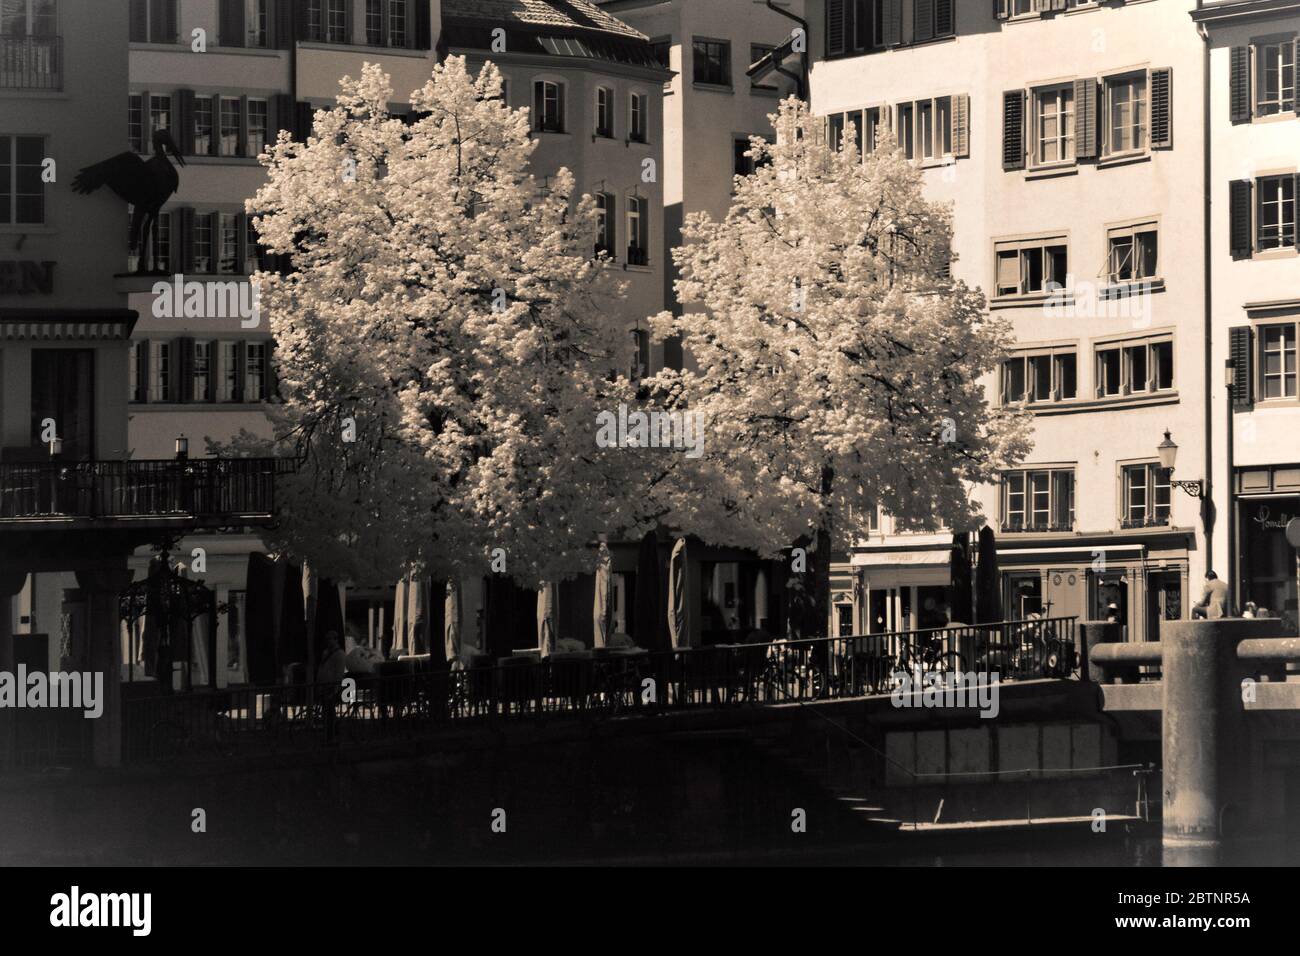 infrared image - square of weinplatz - city of zurich - switzerland Stock Photo